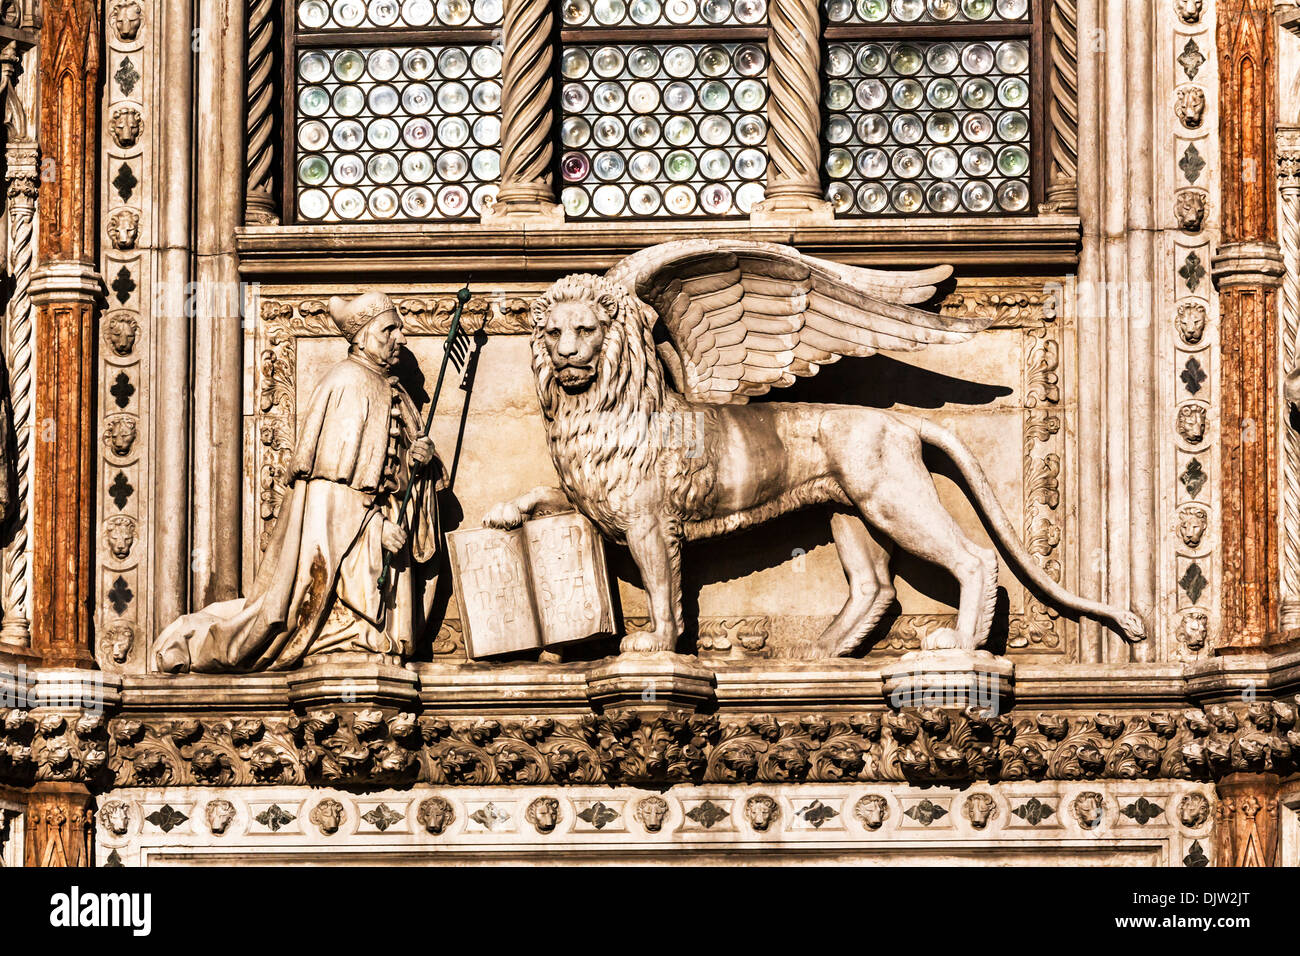 Detail-Aufnahme eines geflügelten Löwen mit ein offenes Buch über die Porta della Carta Eingang zum Dogenpalast, Venedig, Veneto, Italien. Stockfoto